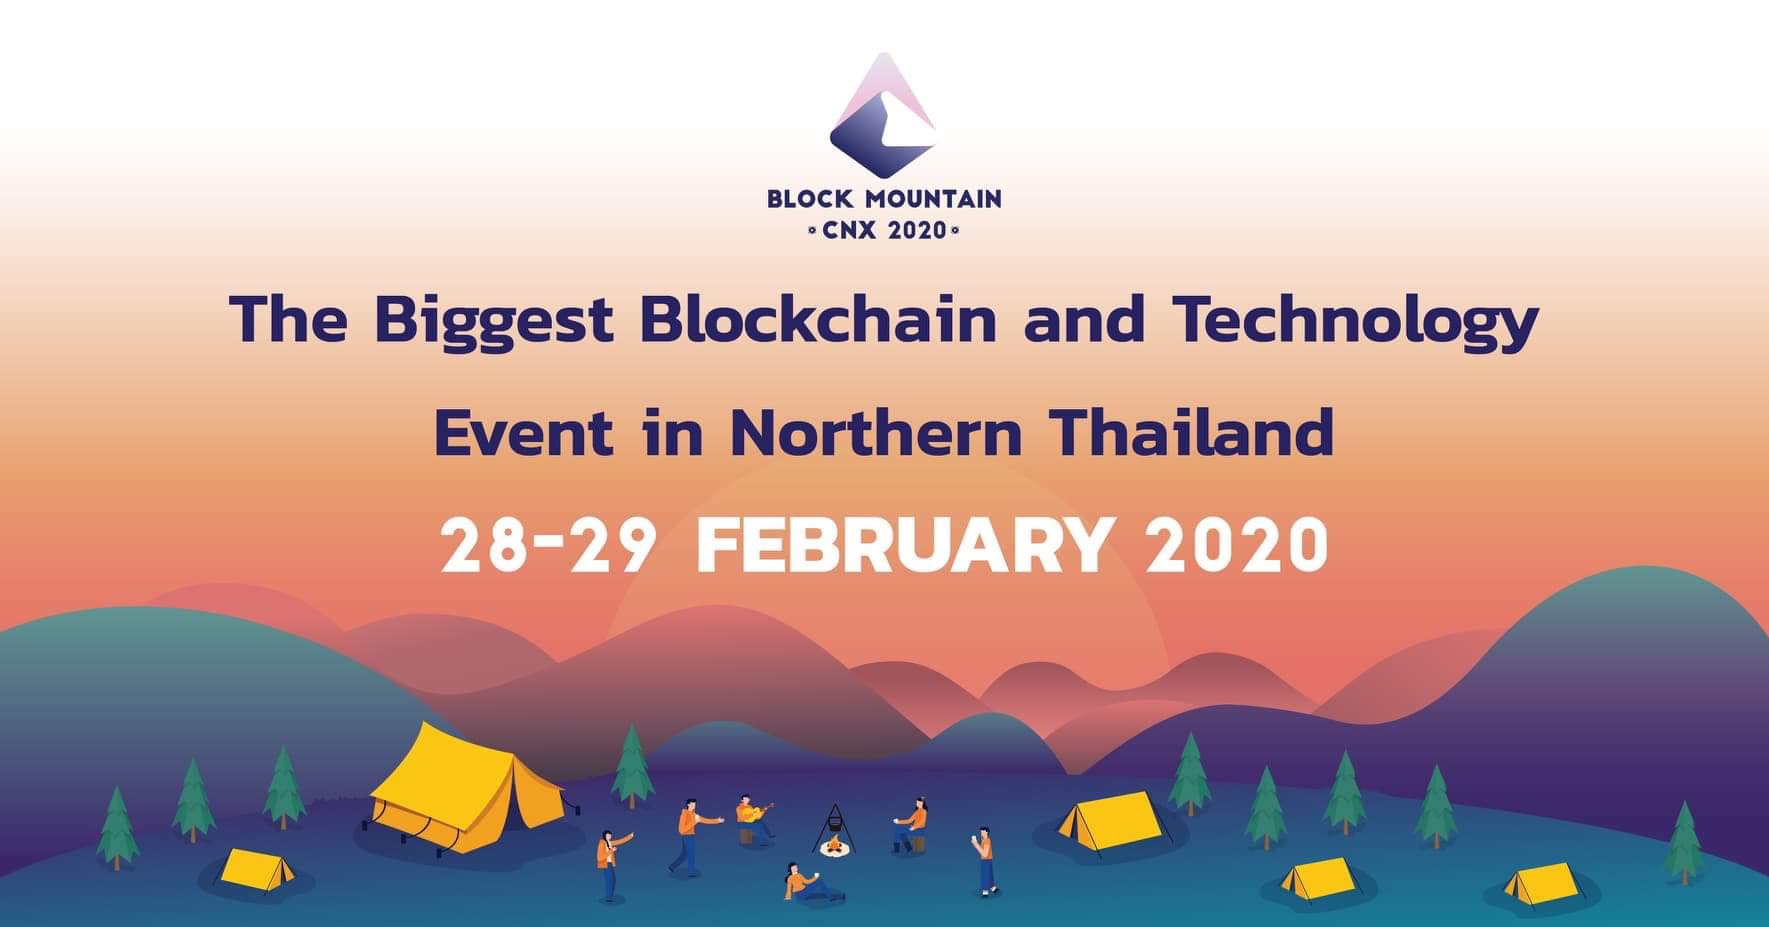 รู้จักงานบล็อกเชนและเทคโนโลยีที่ใหญ่ที่สุดในภาคเหนือ “Block Mountain CNX 2020” จัด 28 – 29 กุมภาพันธ์นี้